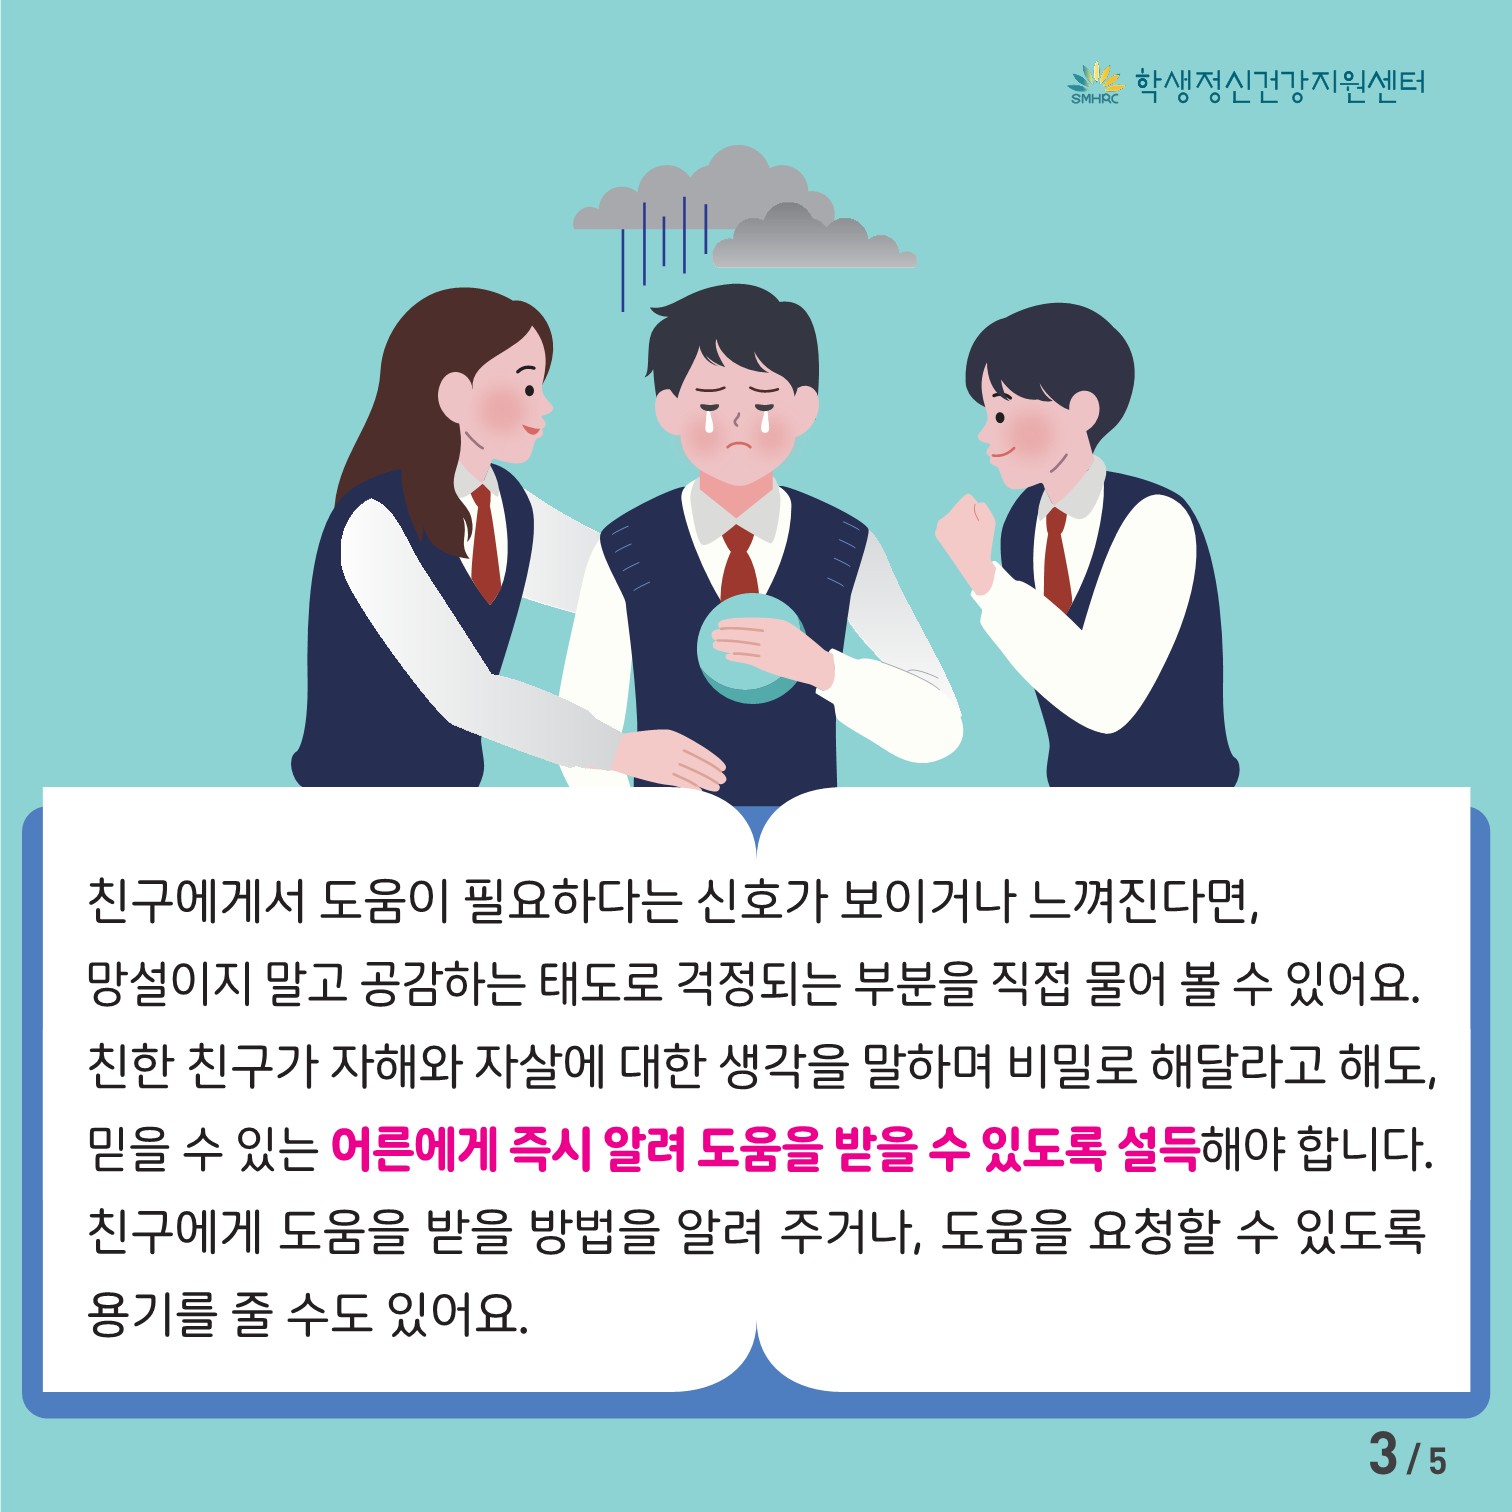 [붙임7] [중고등학생용] 카드뉴스 제 2023 - 9호 (1)_3